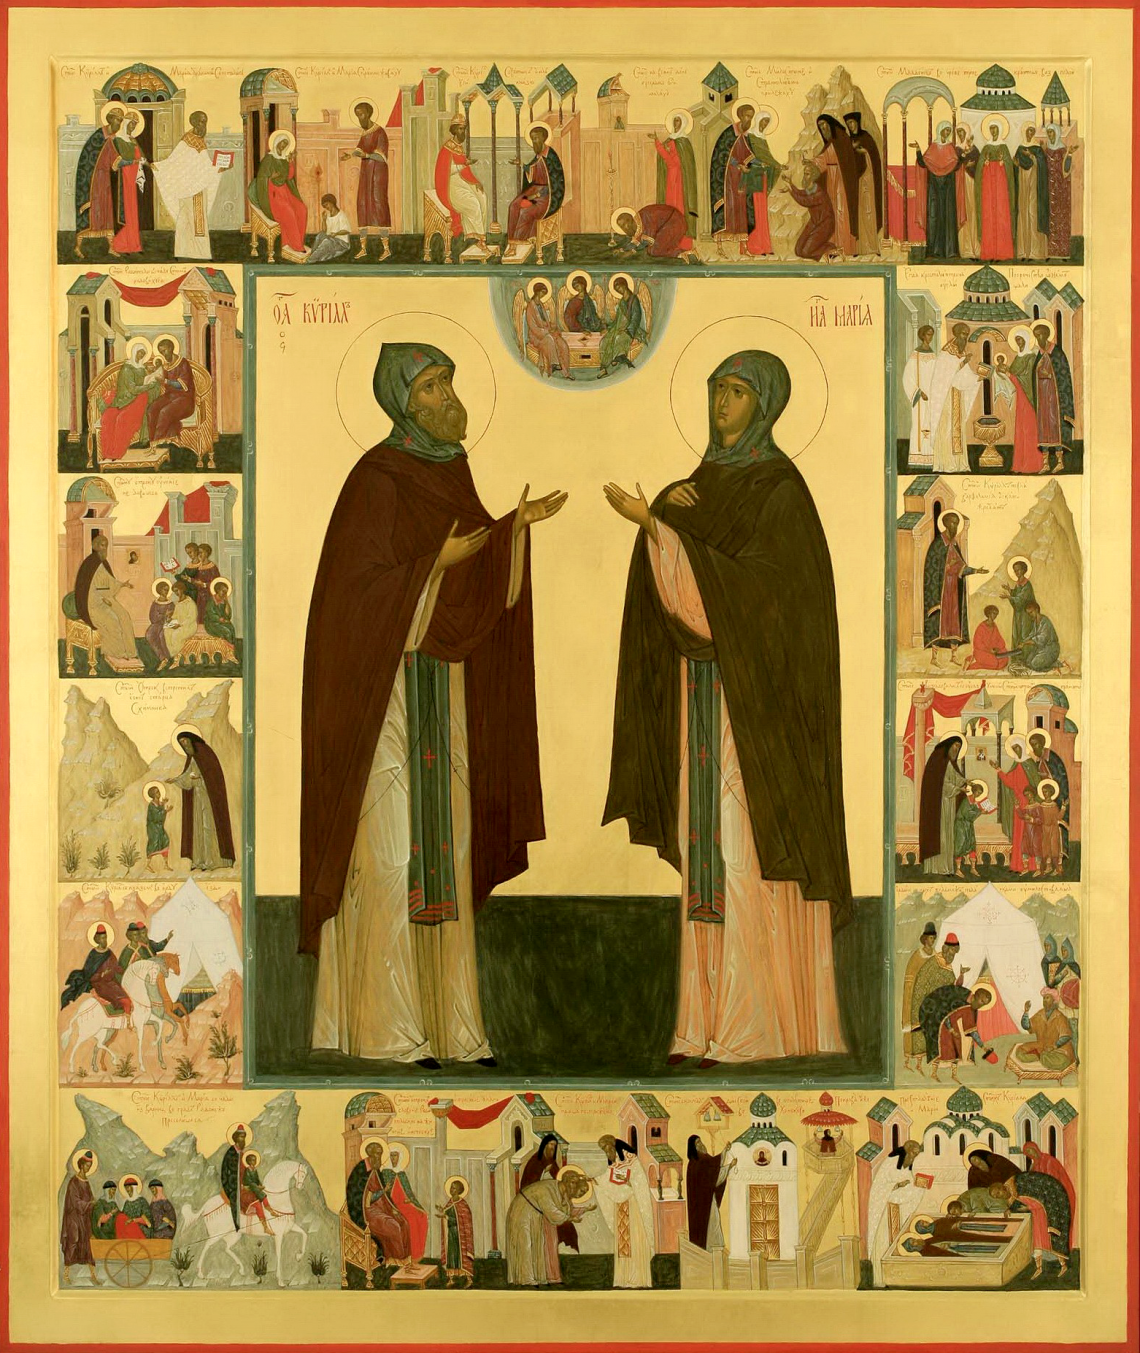 Молебен с акафистом перед иконой с мощами прпп. схимонаха Кирилла и схимонахини Марии, родителей прп. Сергия Радонежского.